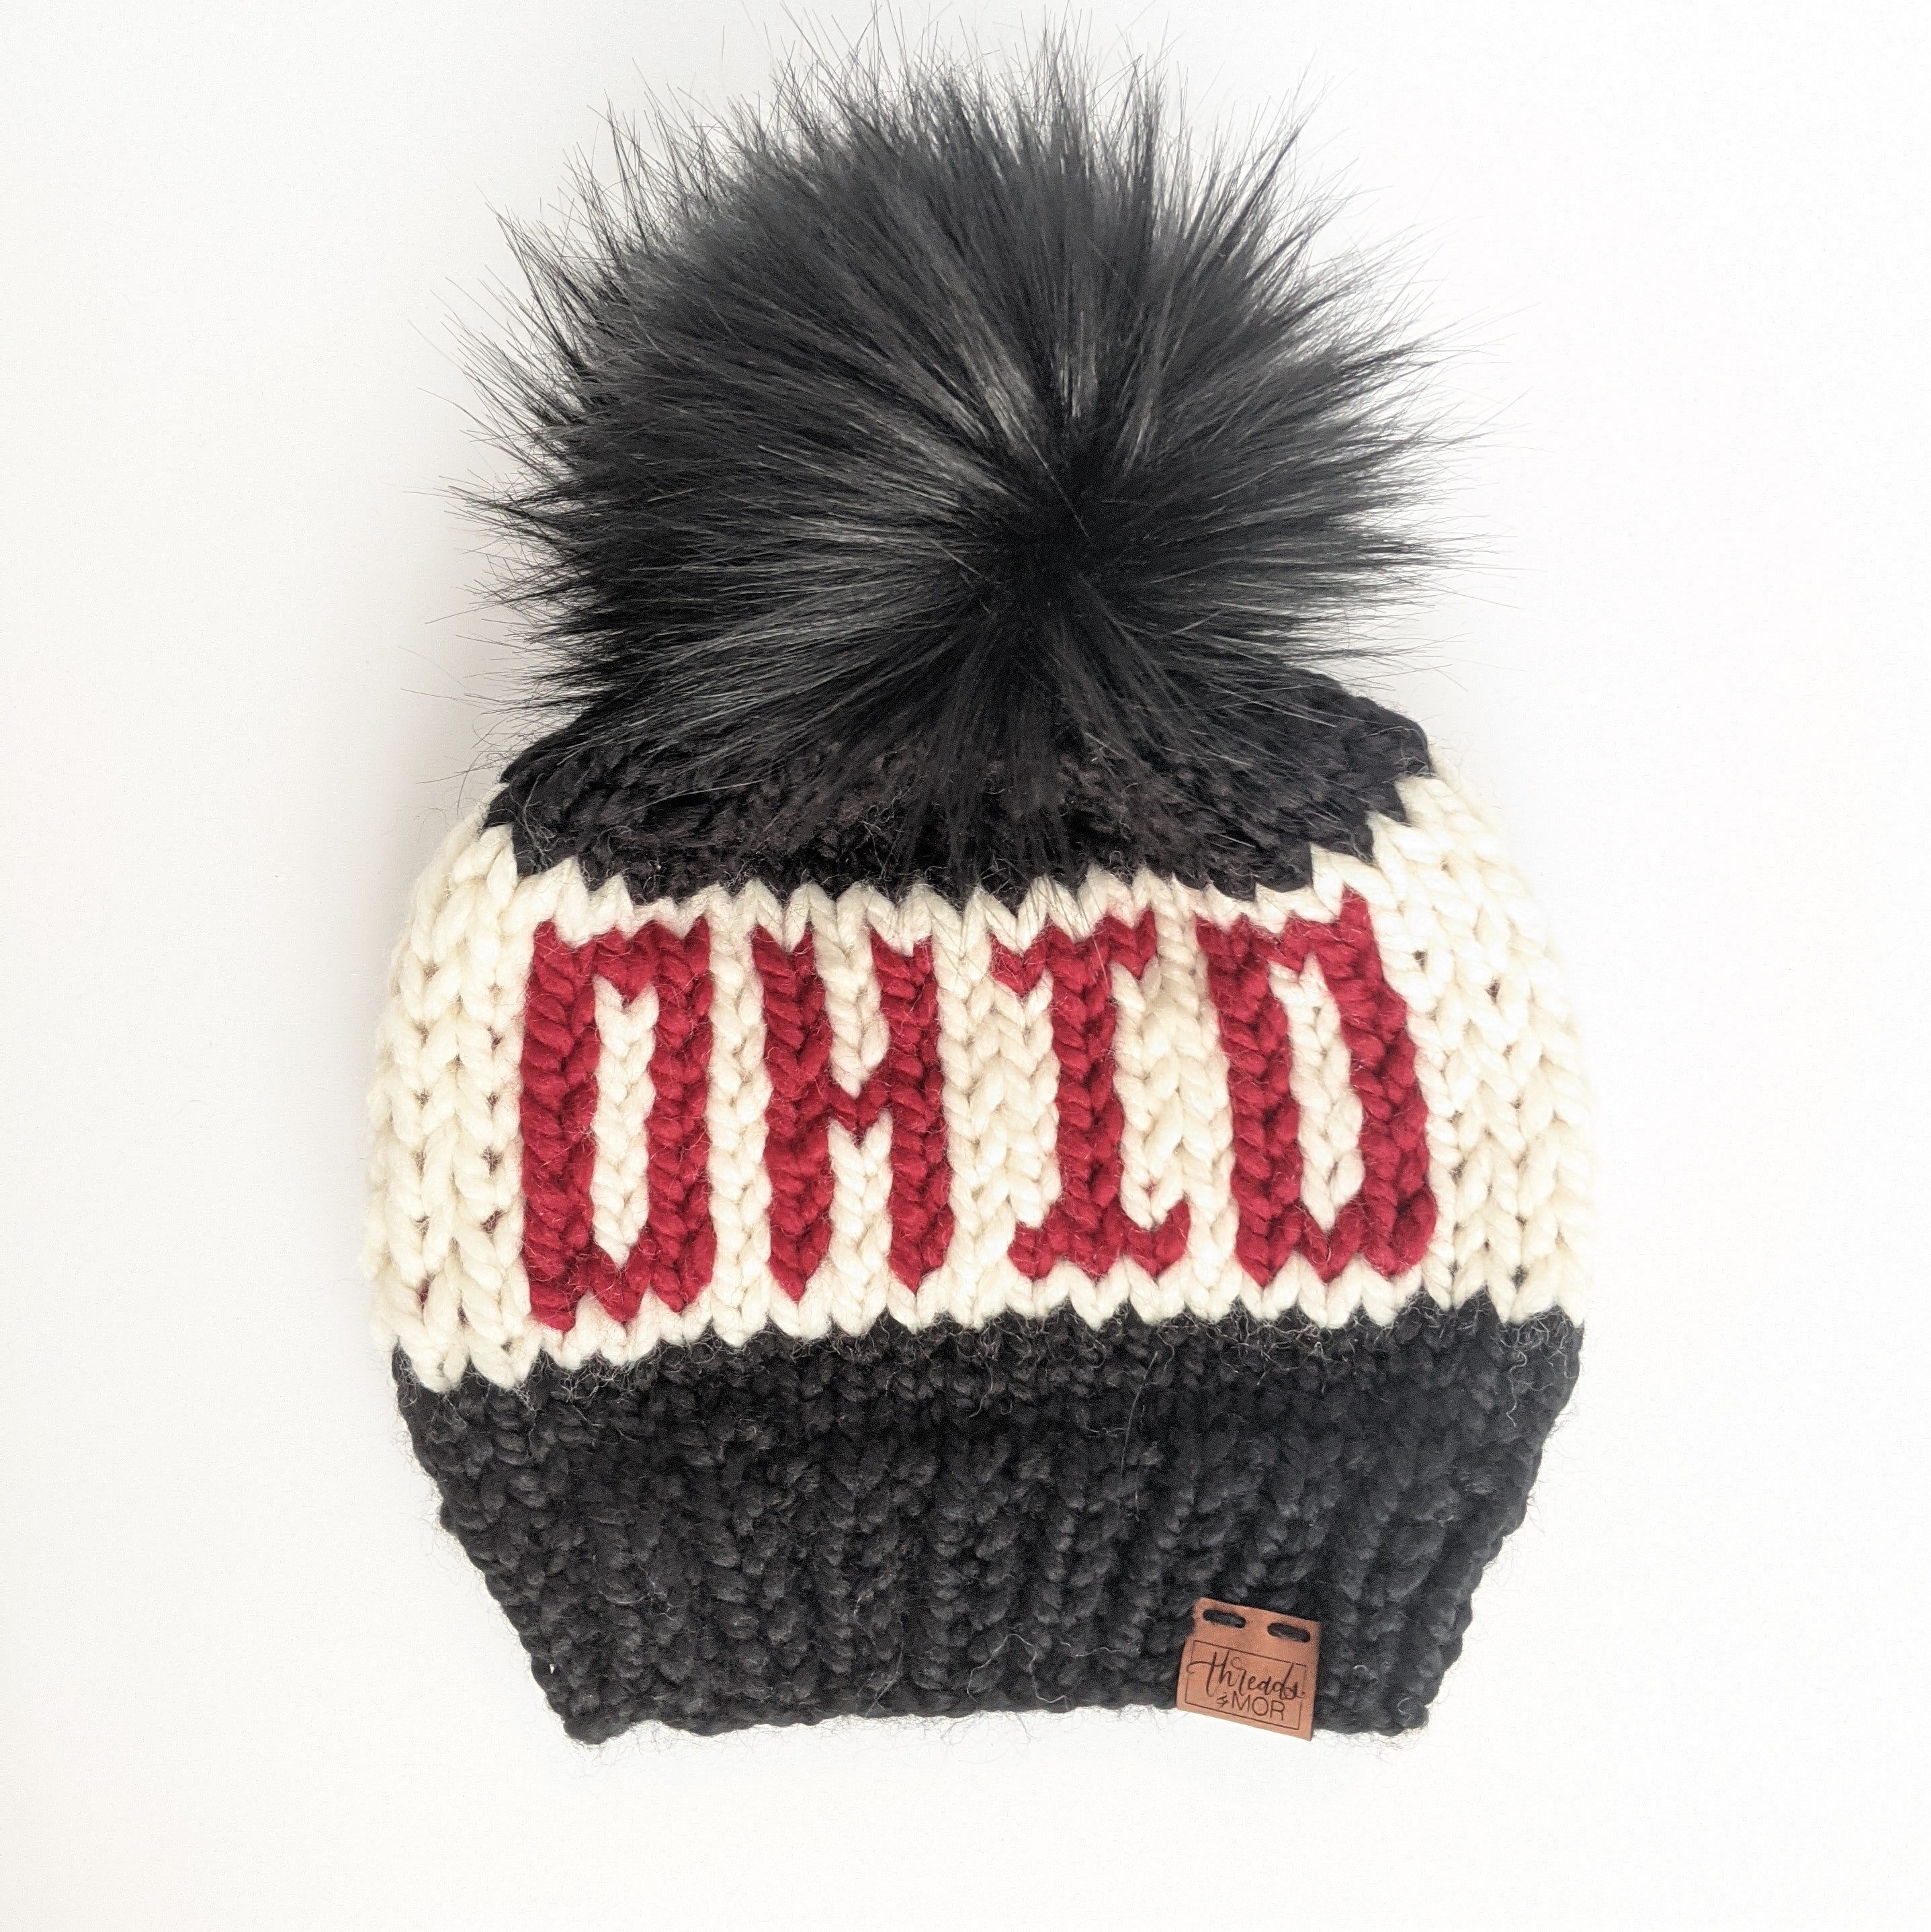 OHIO STATE Script Knit Hat w/ faux fur pom pom